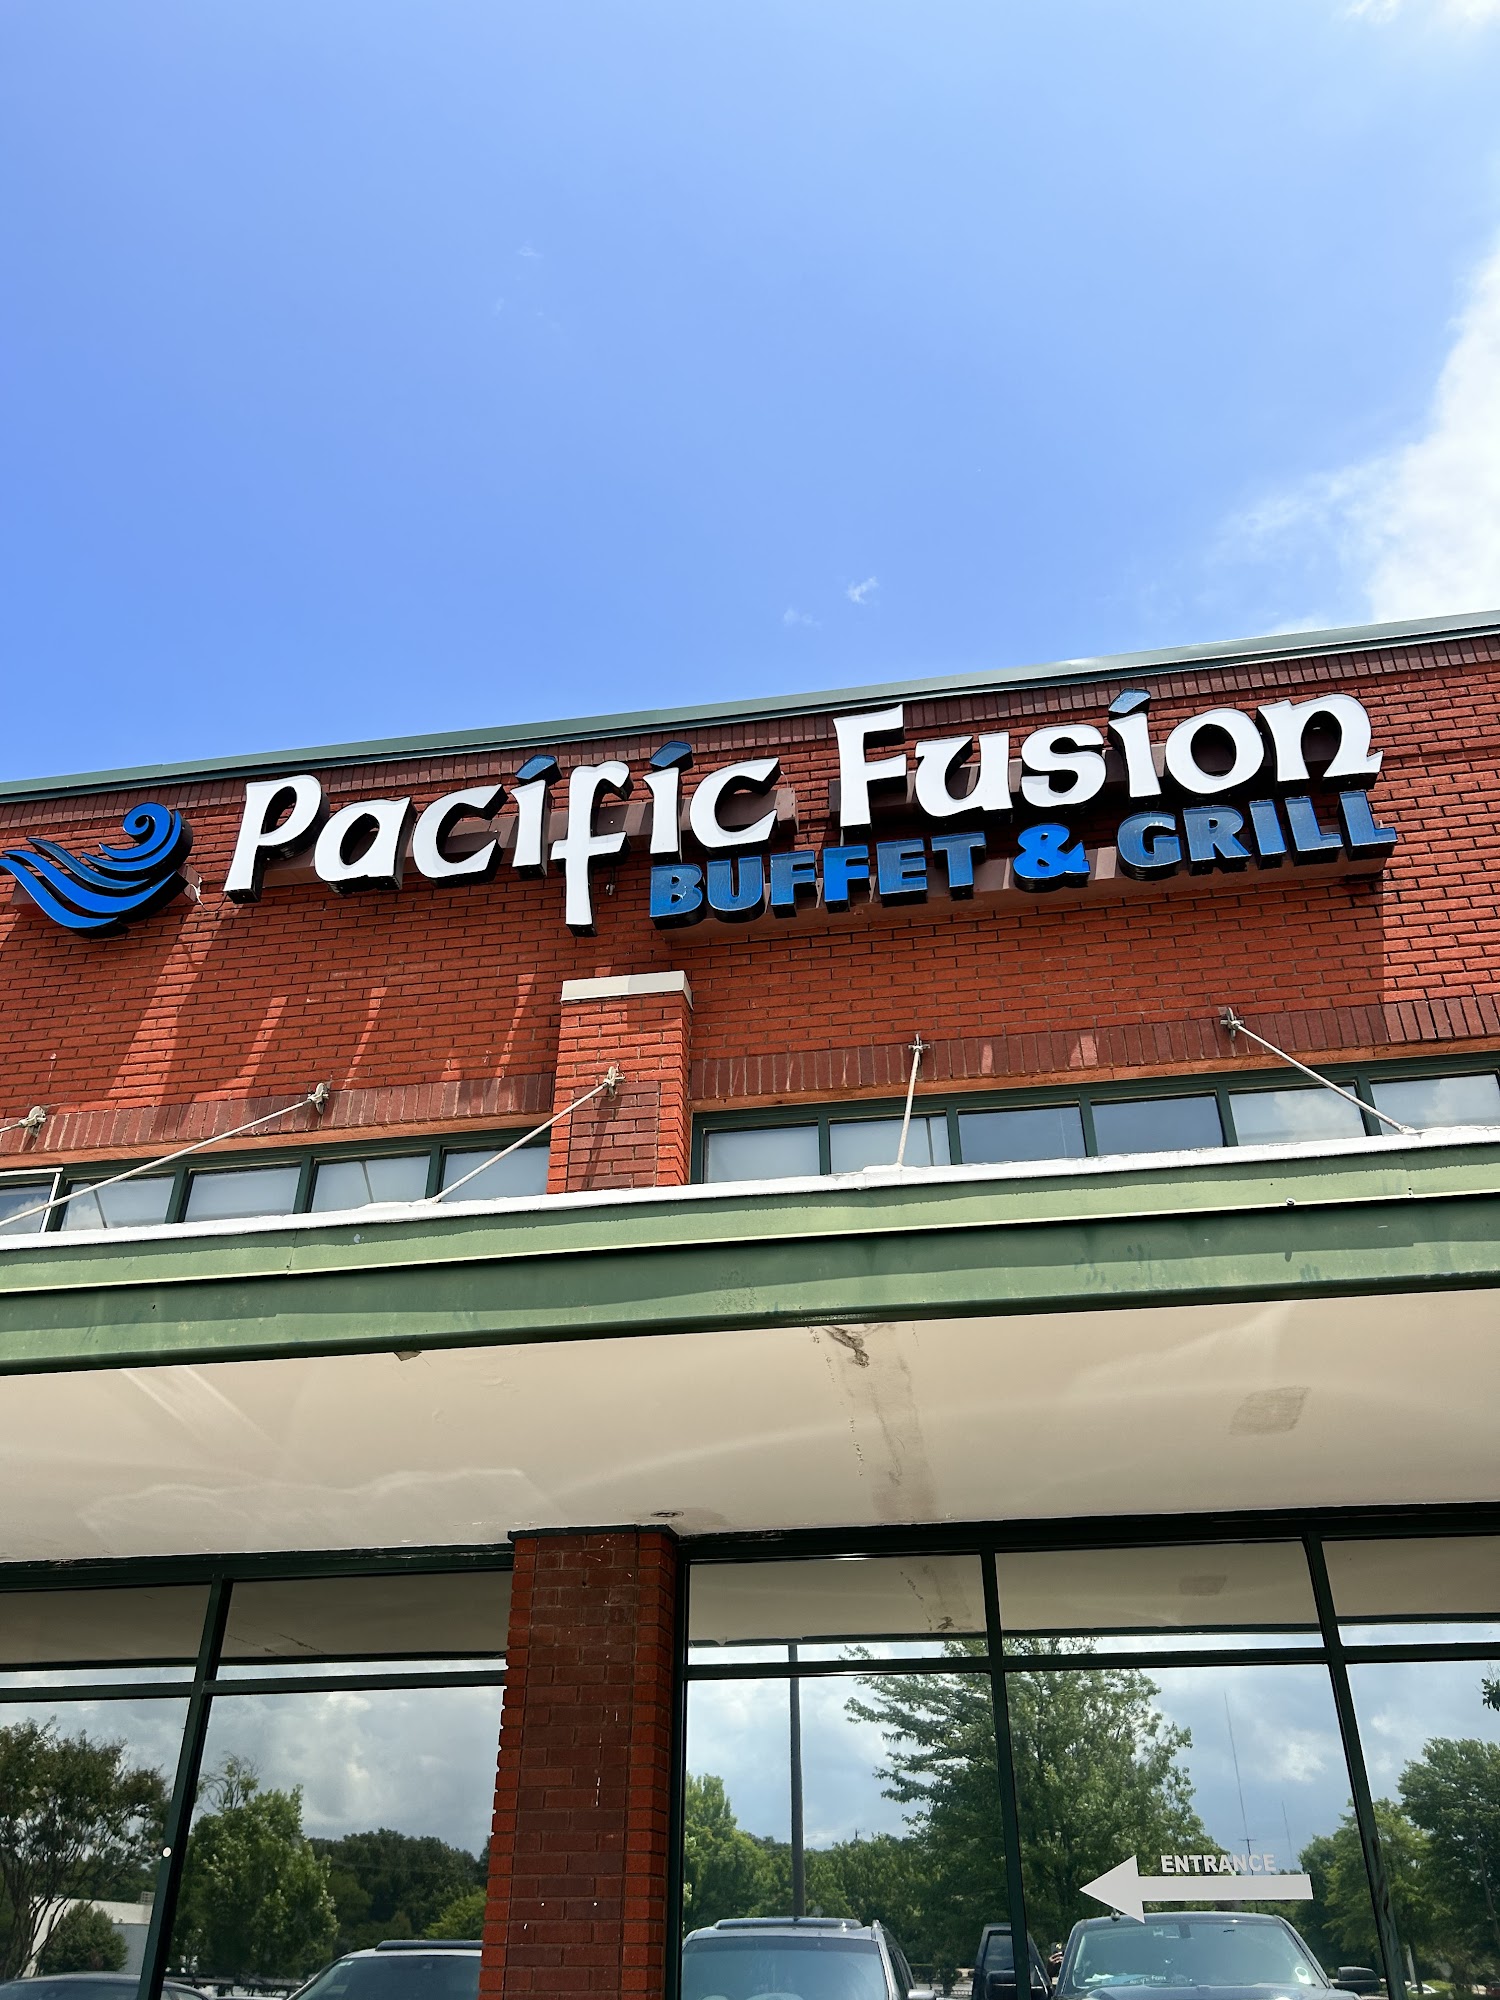 Pacific Fusion